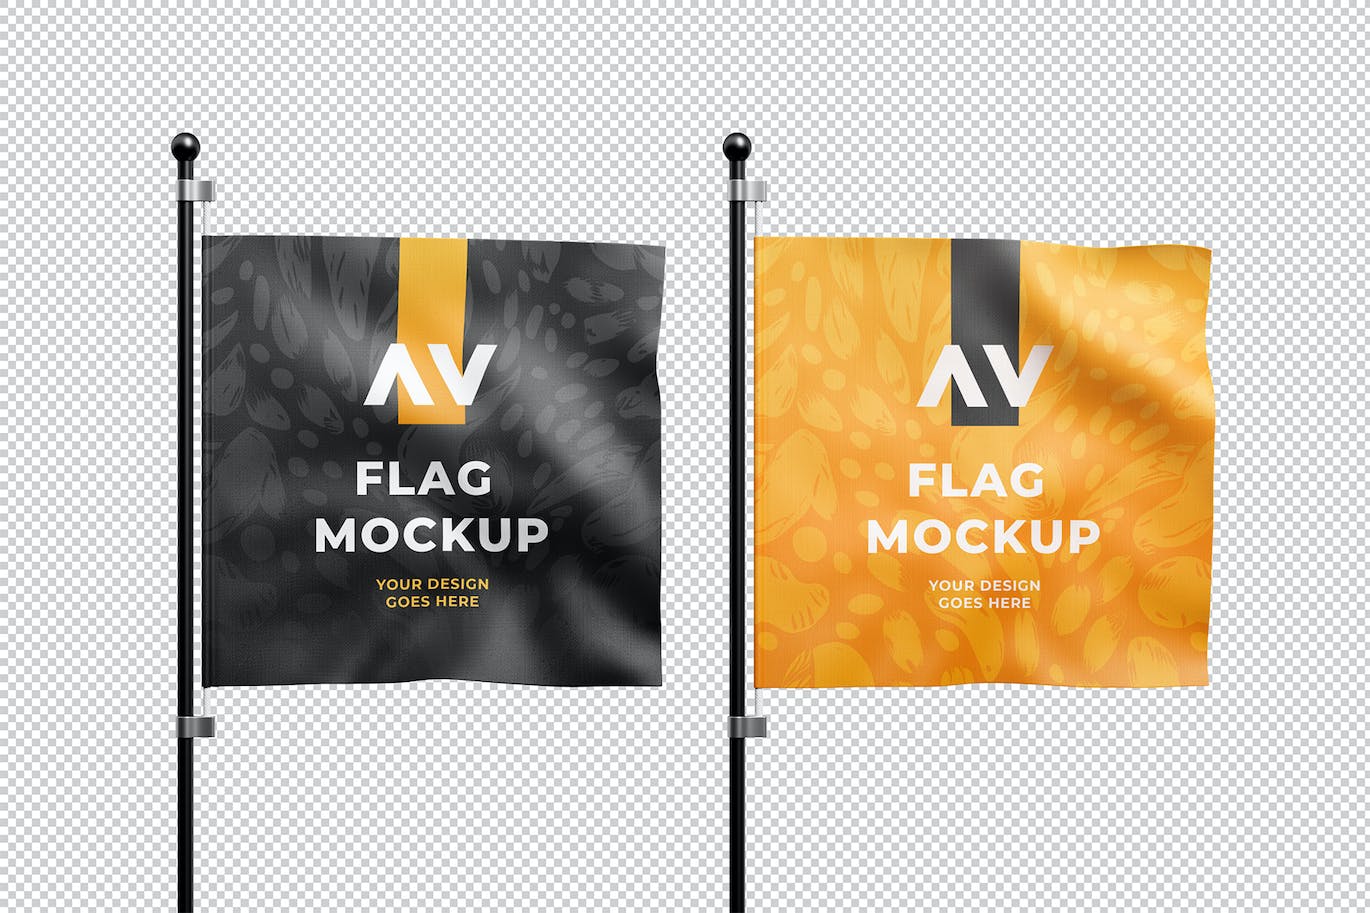 方形旗帜品牌设计样机 Square Flag Mockup 样机素材 第2张